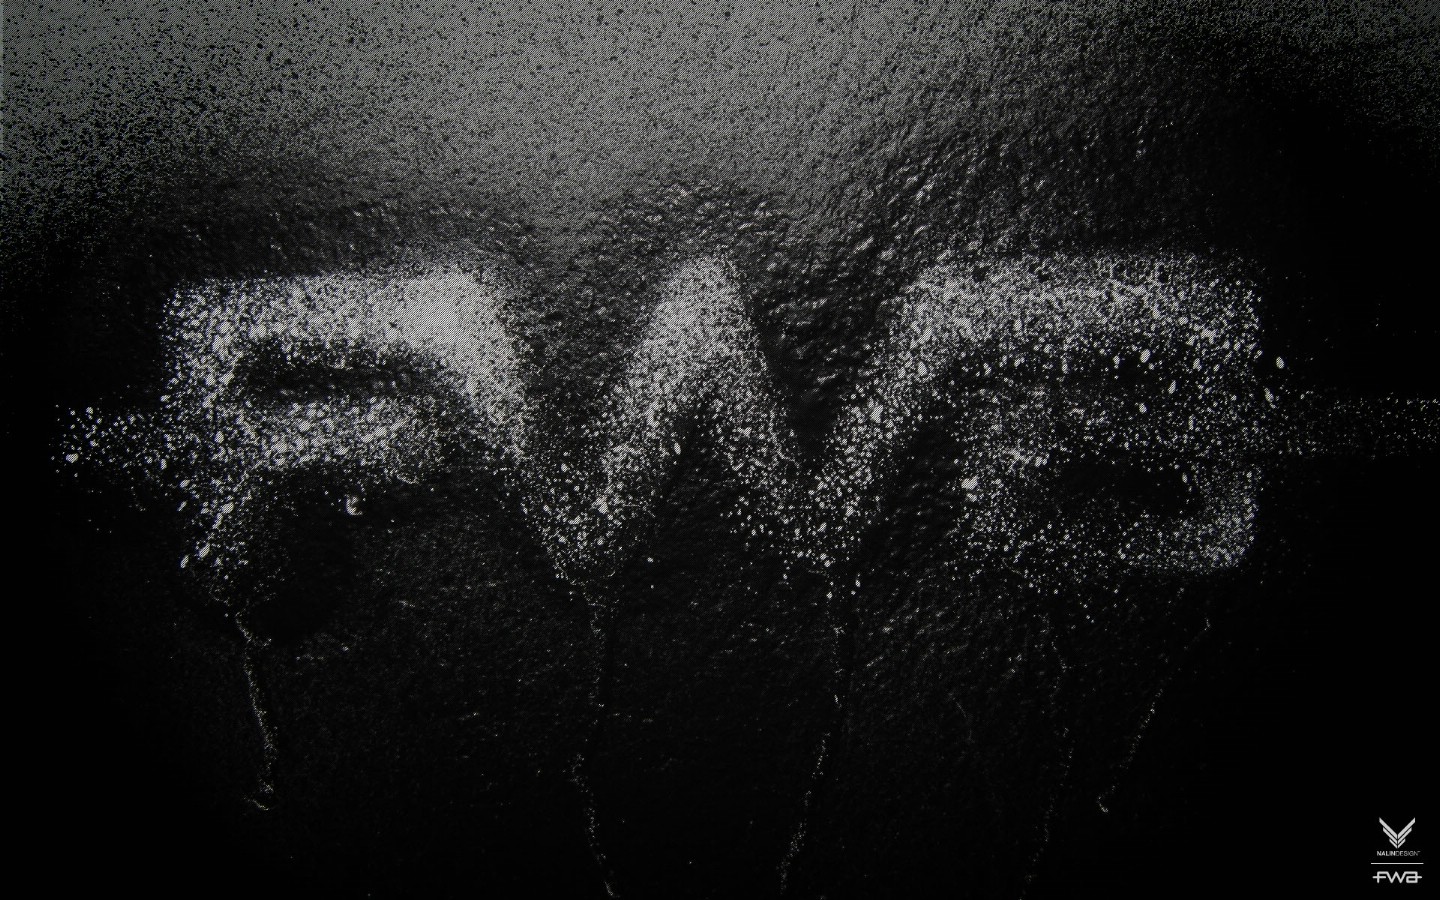 壁纸1440x900FWA黑色专辑 1 11壁纸 其他品牌 FWA黑色专辑 第一辑壁纸 其他品牌 FWA黑色专辑 第一辑图片 其他品牌 FWA黑色专辑 第一辑素材 品牌壁纸 品牌图库 品牌图片素材桌面壁纸